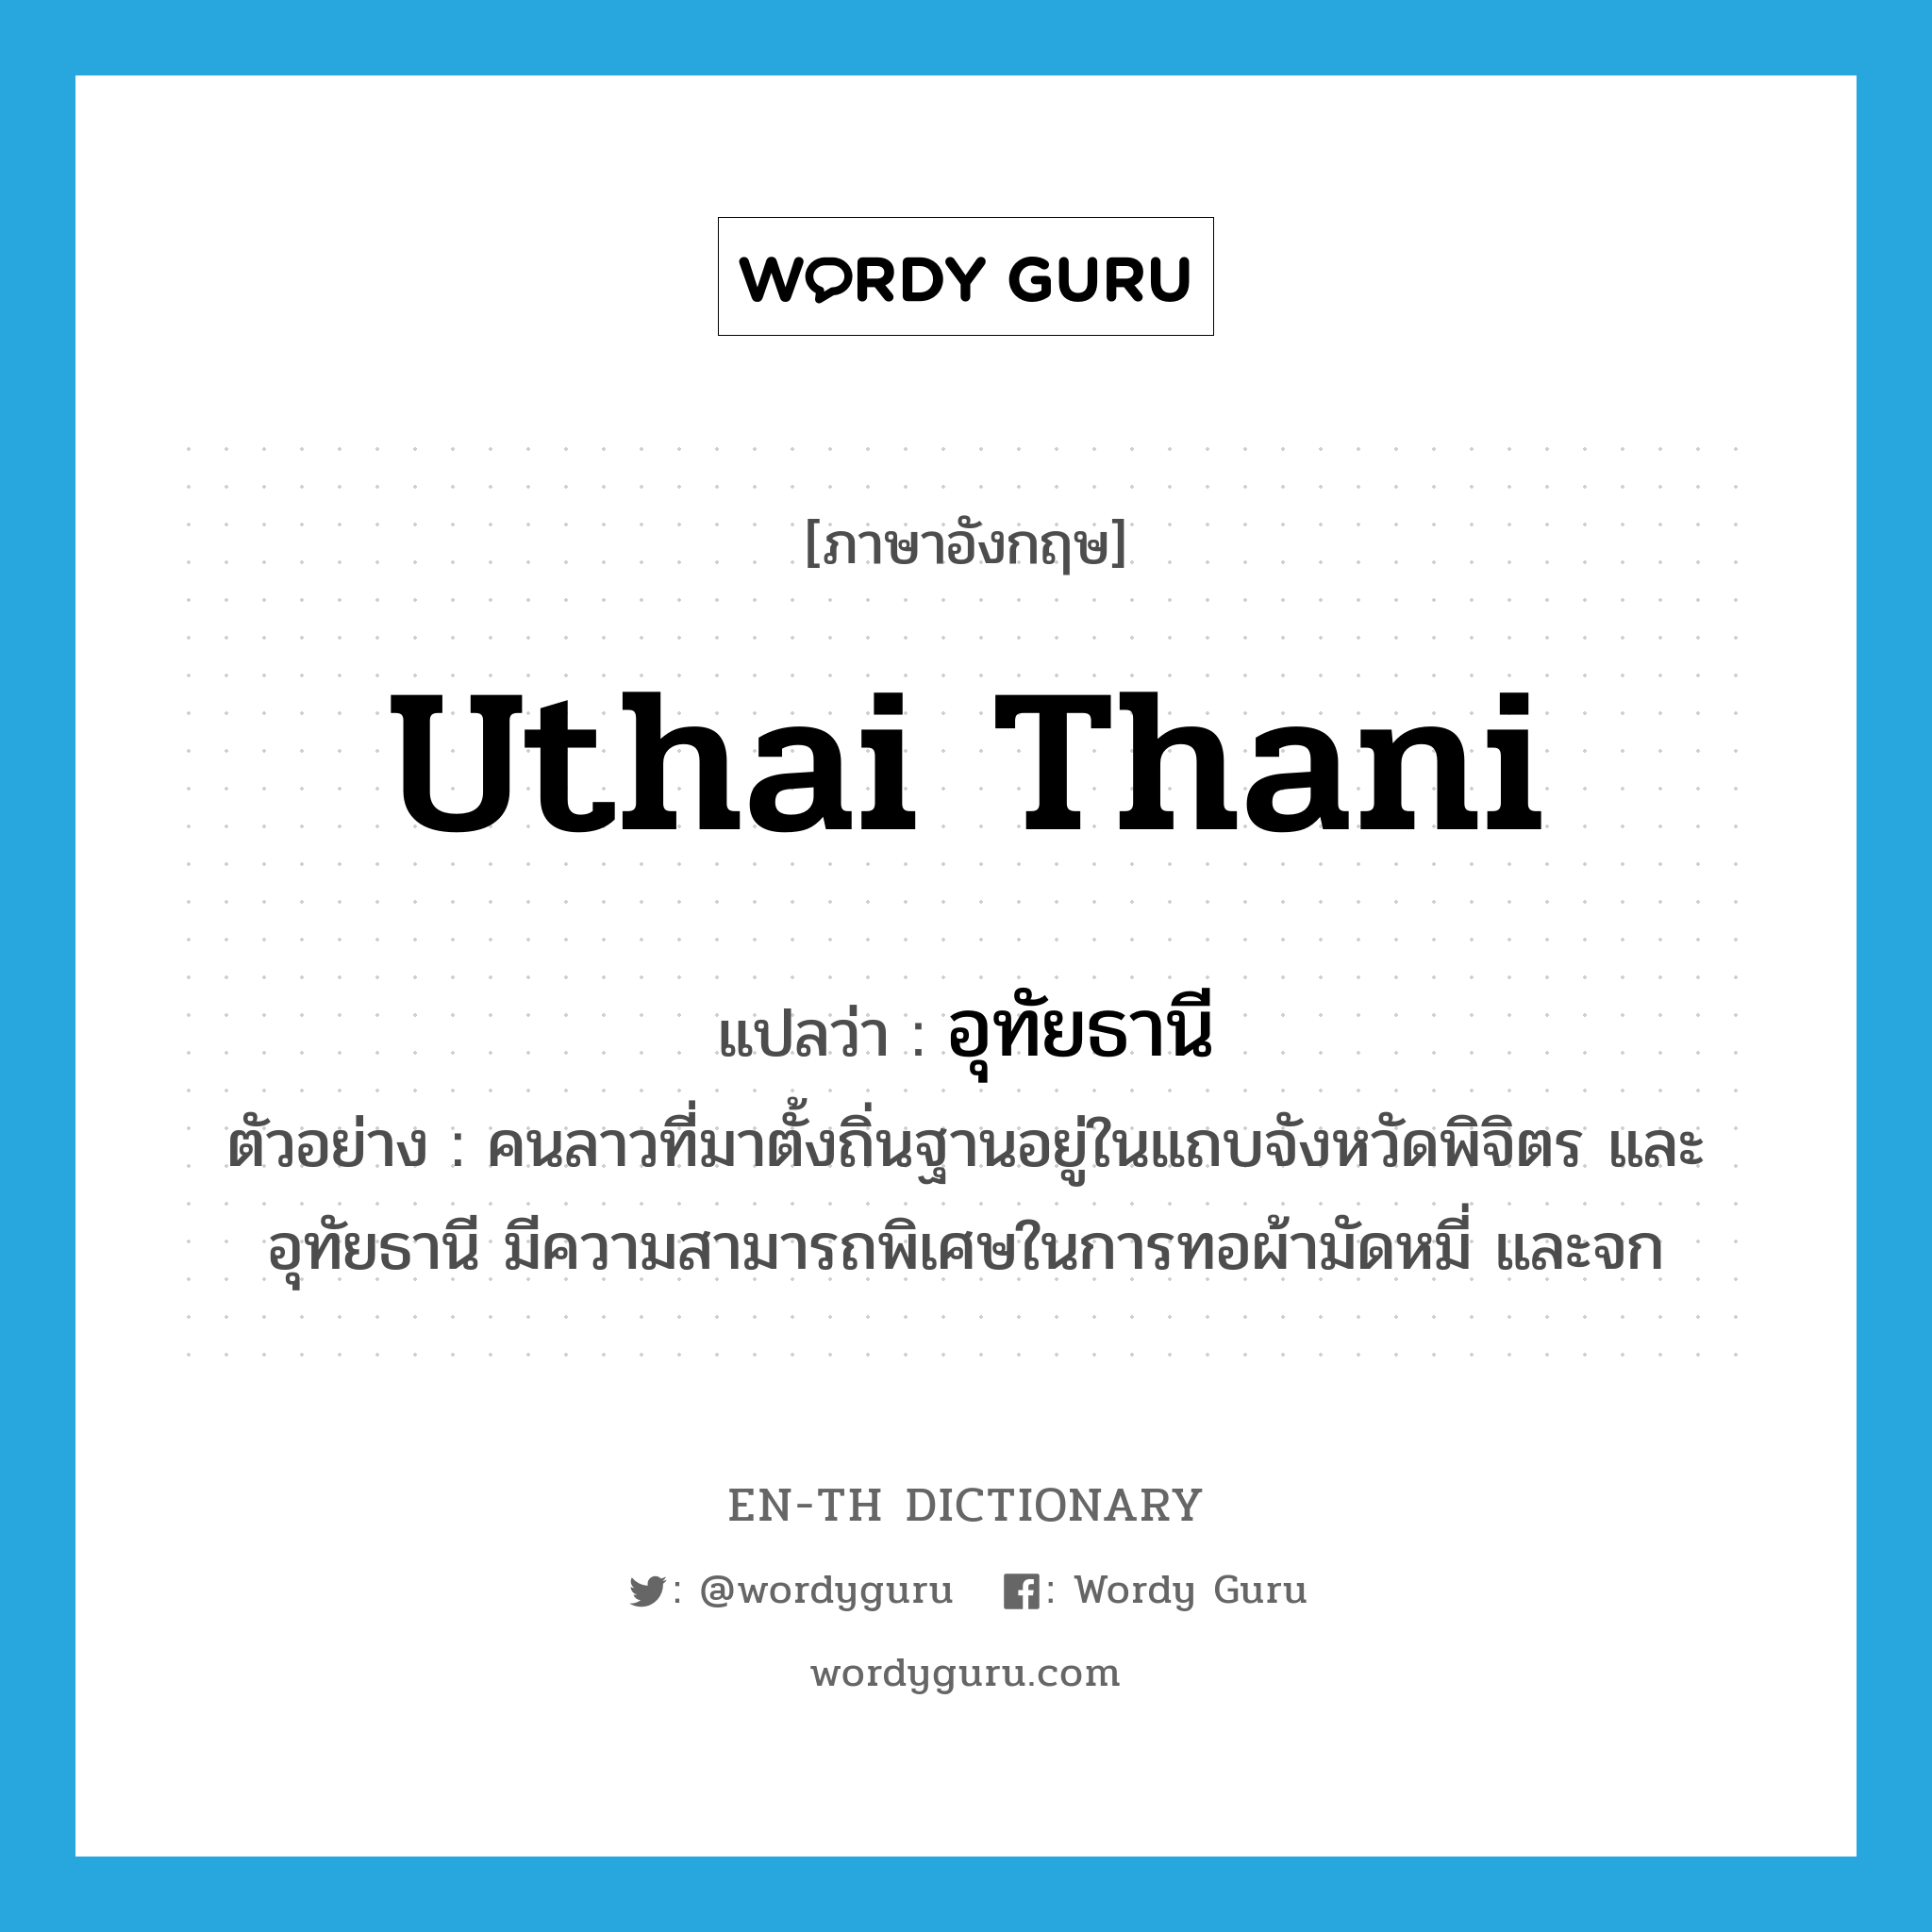 Uthai Thani แปลว่า?, คำศัพท์ภาษาอังกฤษ Uthai Thani แปลว่า อุทัยธานี ประเภท N ตัวอย่าง คนลาวที่มาตั้งถิ่นฐานอยู่ในแถบจังหวัดพิจิตร และอุทัยธานี มีความสามารถพิเศษในการทอผ้ามัดหมี่ และจก หมวด N